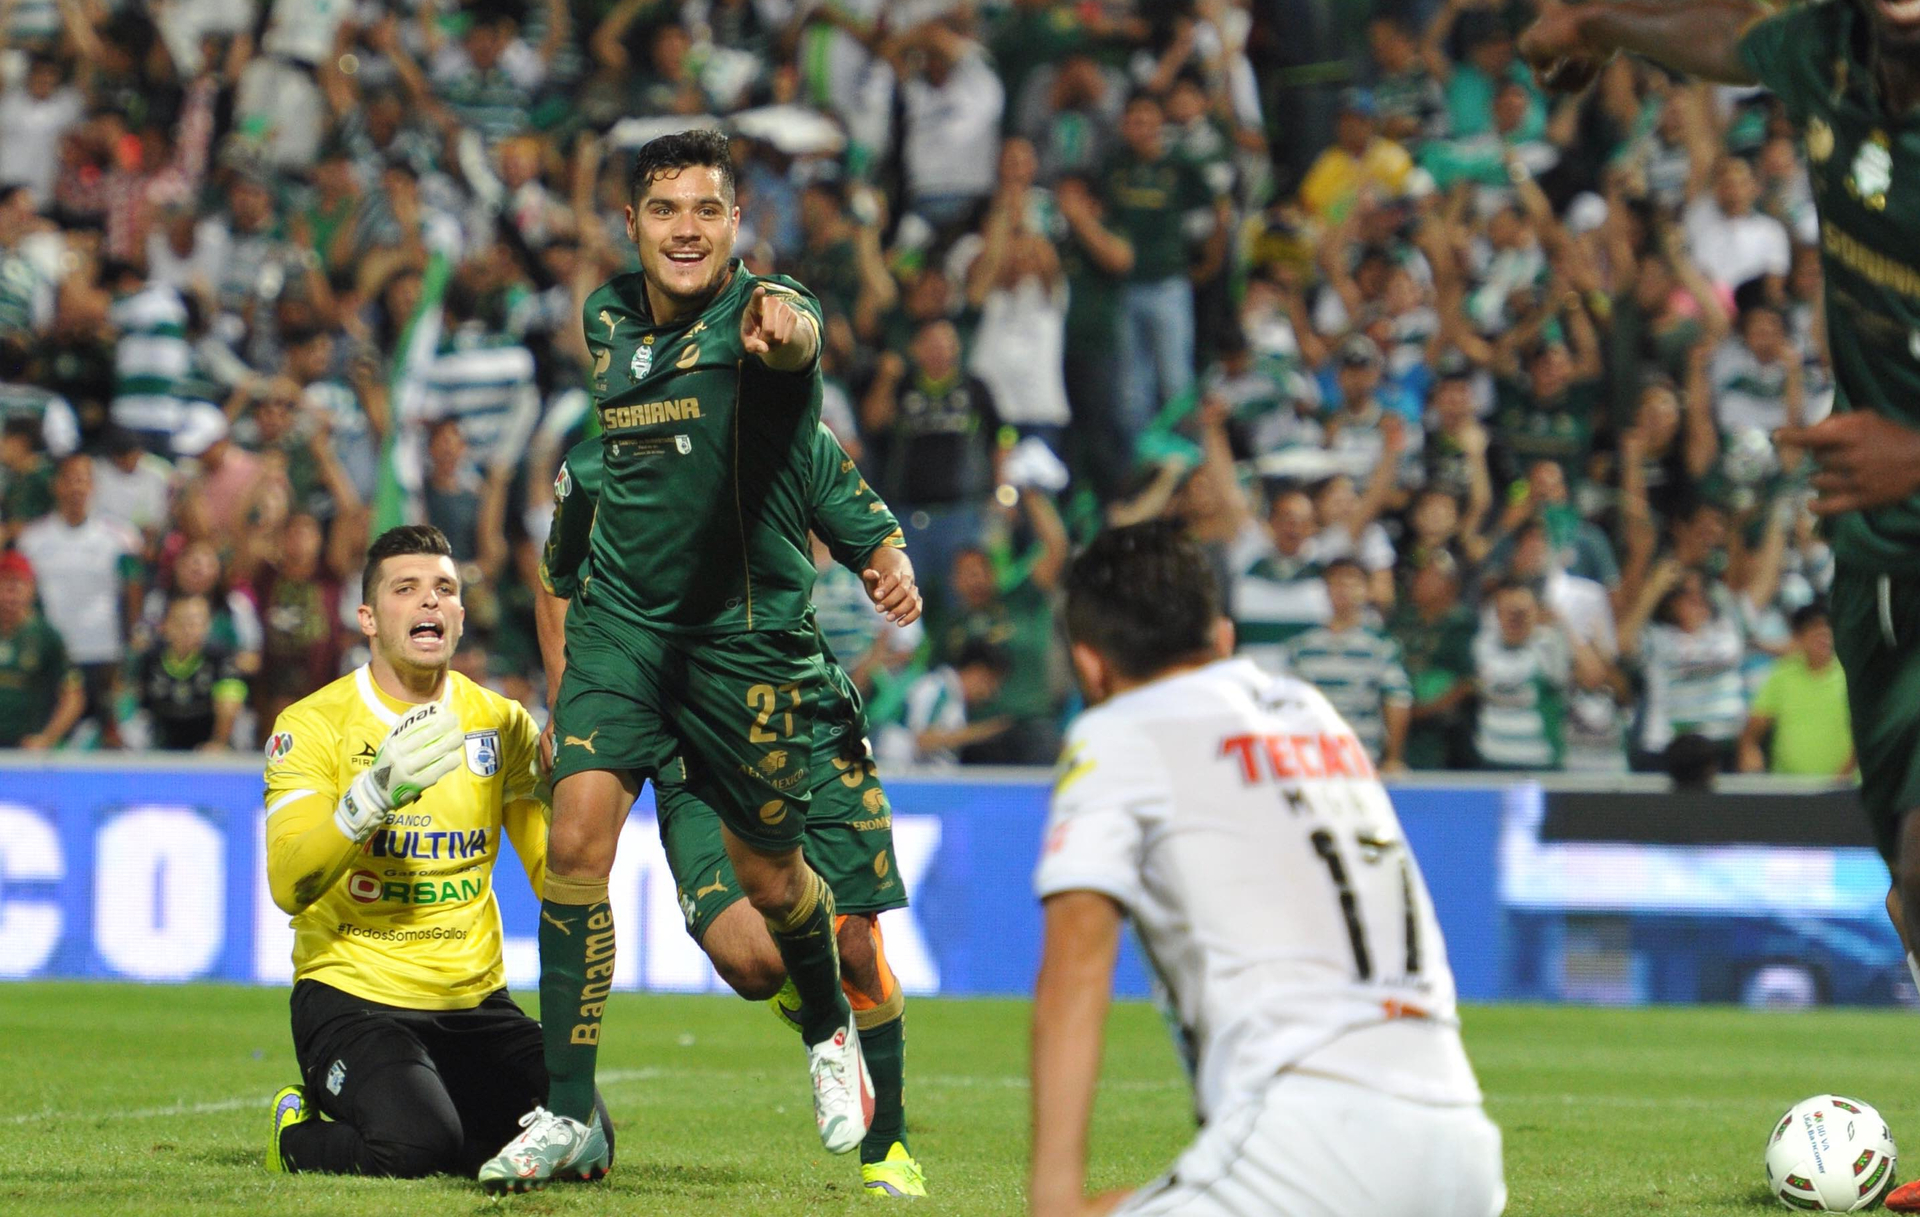 Recuerdan goleada de Santos Laguna a Tiago Volpi en la final del Clausura 2015